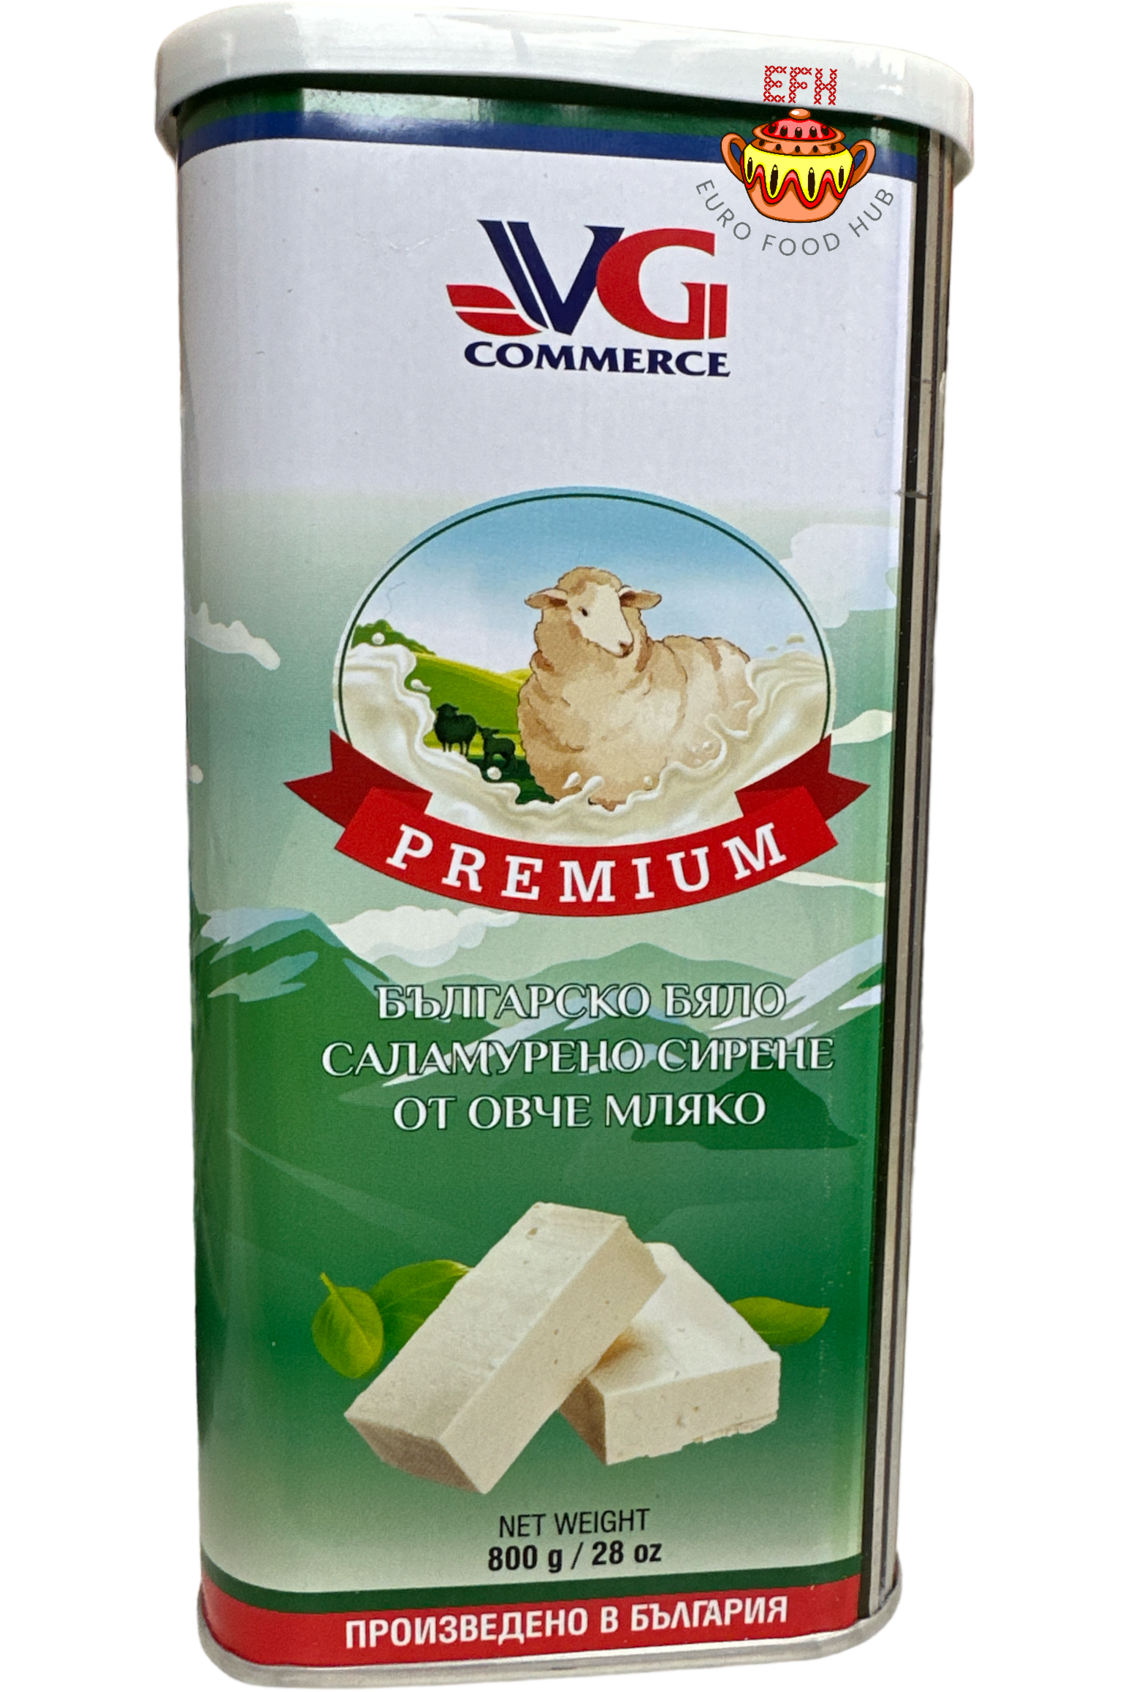 VG Commerce - Bulgarian White Brined Sheep's Milk Cheese - Premium - 800g